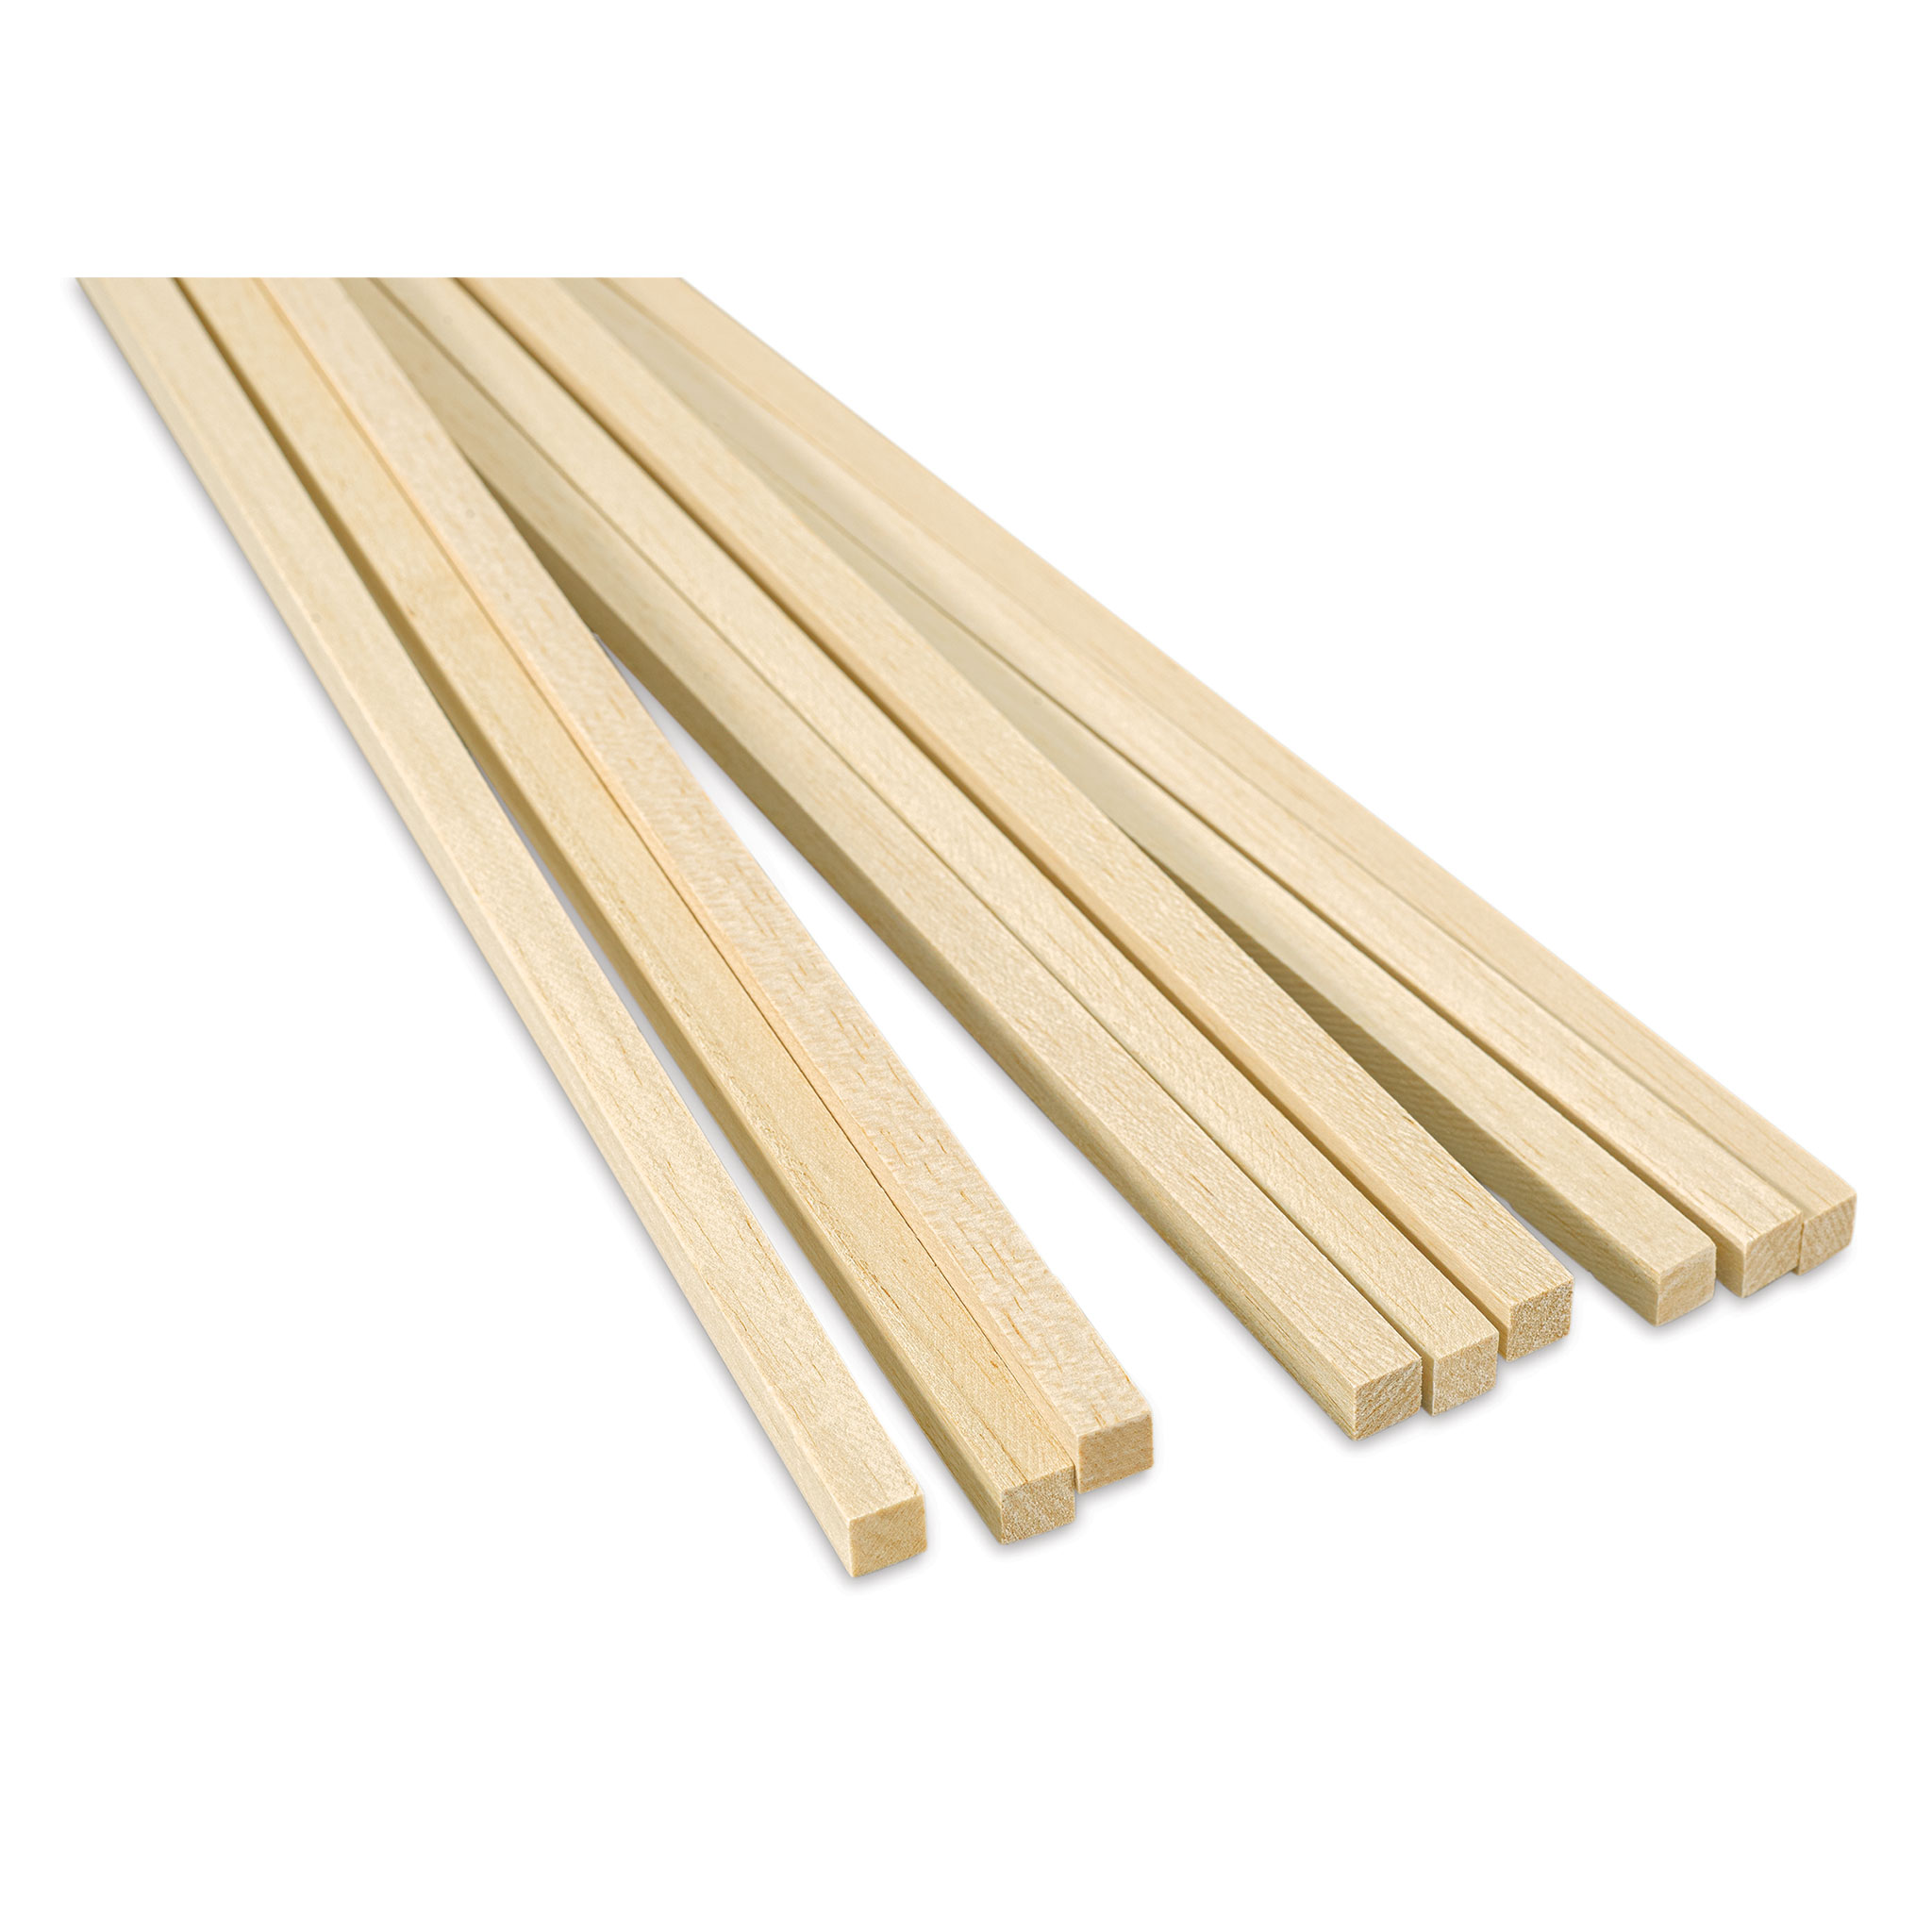 Bud Nosen Balsa Wood Sticks - 1/16 x 1 x 36, Pkg of 20